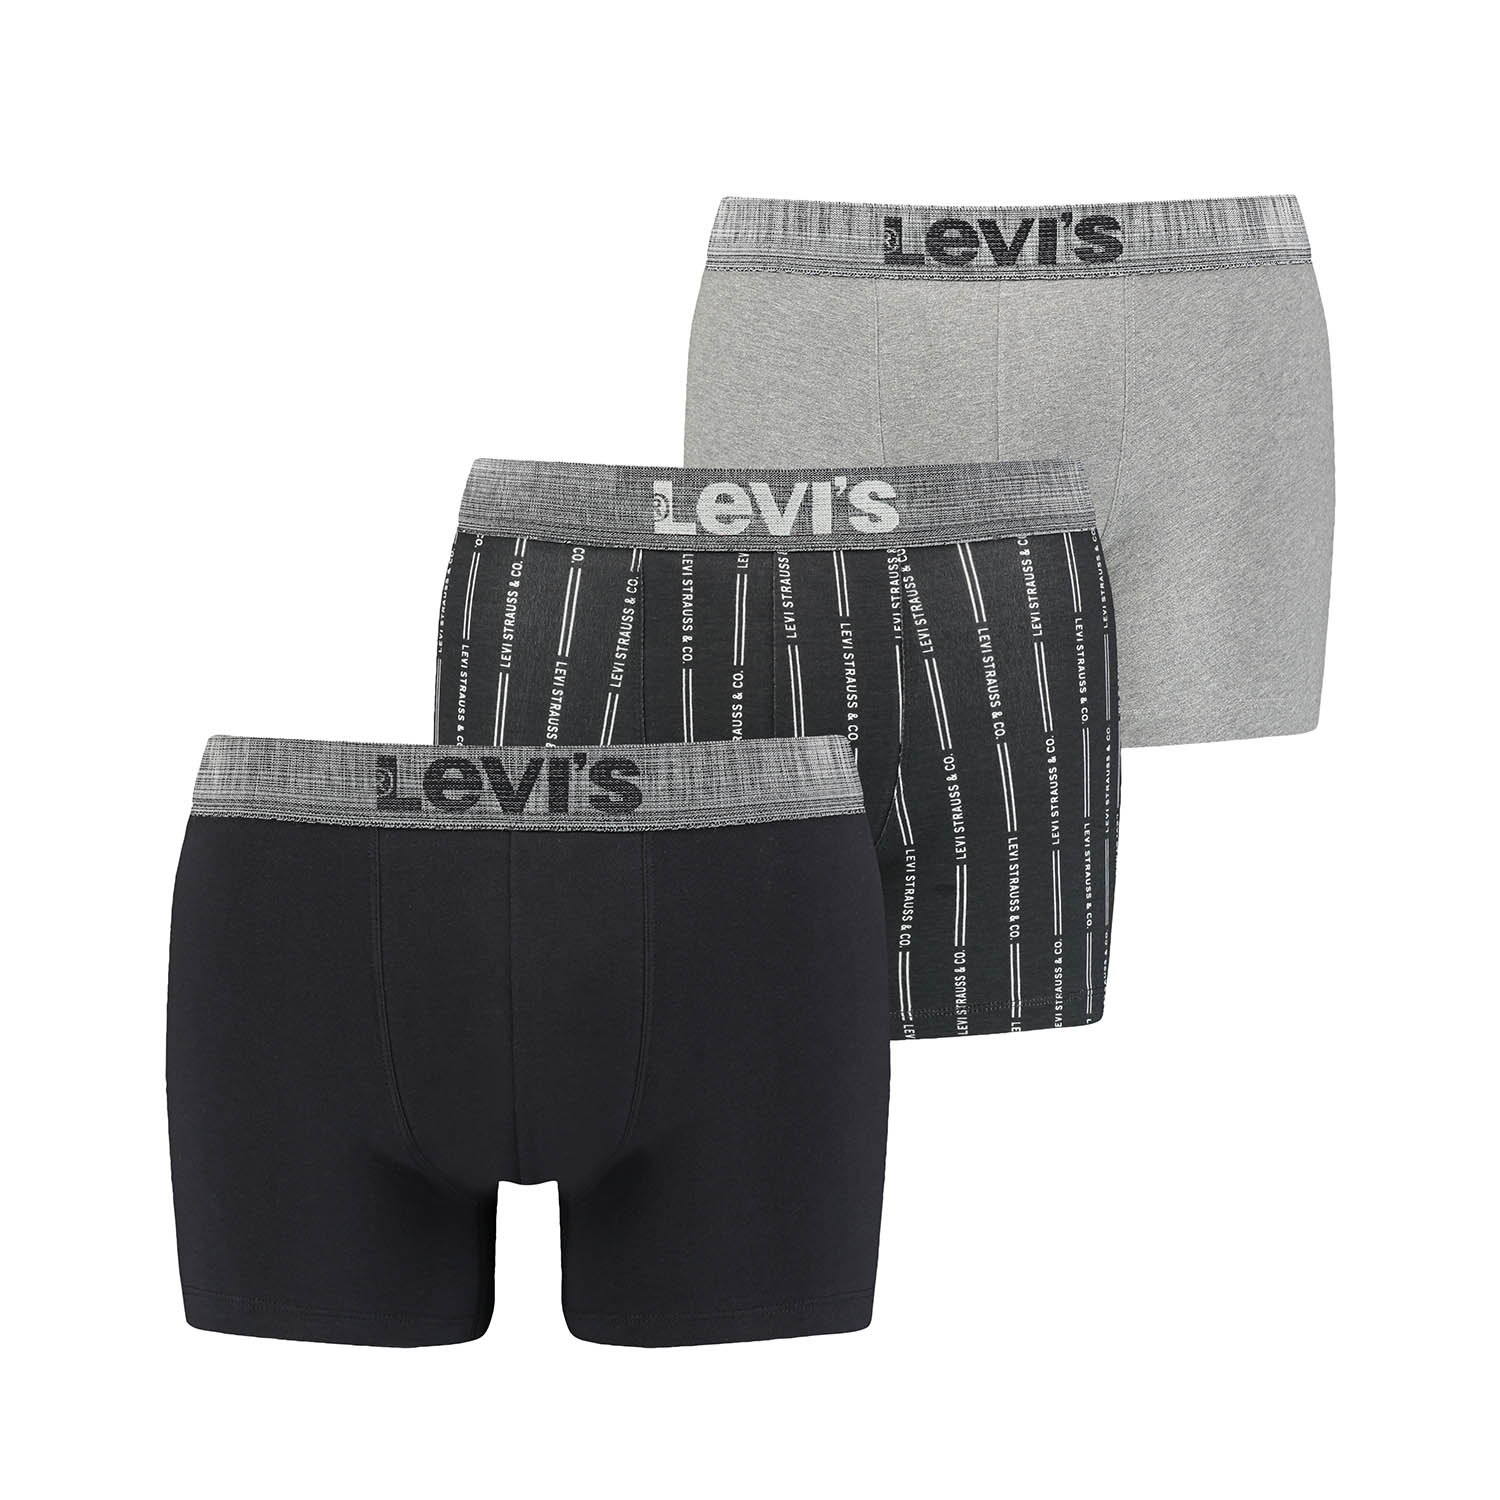 3 er Pack Levis Boxer Brief Herren Boxershorts Unterhose Pant Unterwäsche Geschenkbox Stripes